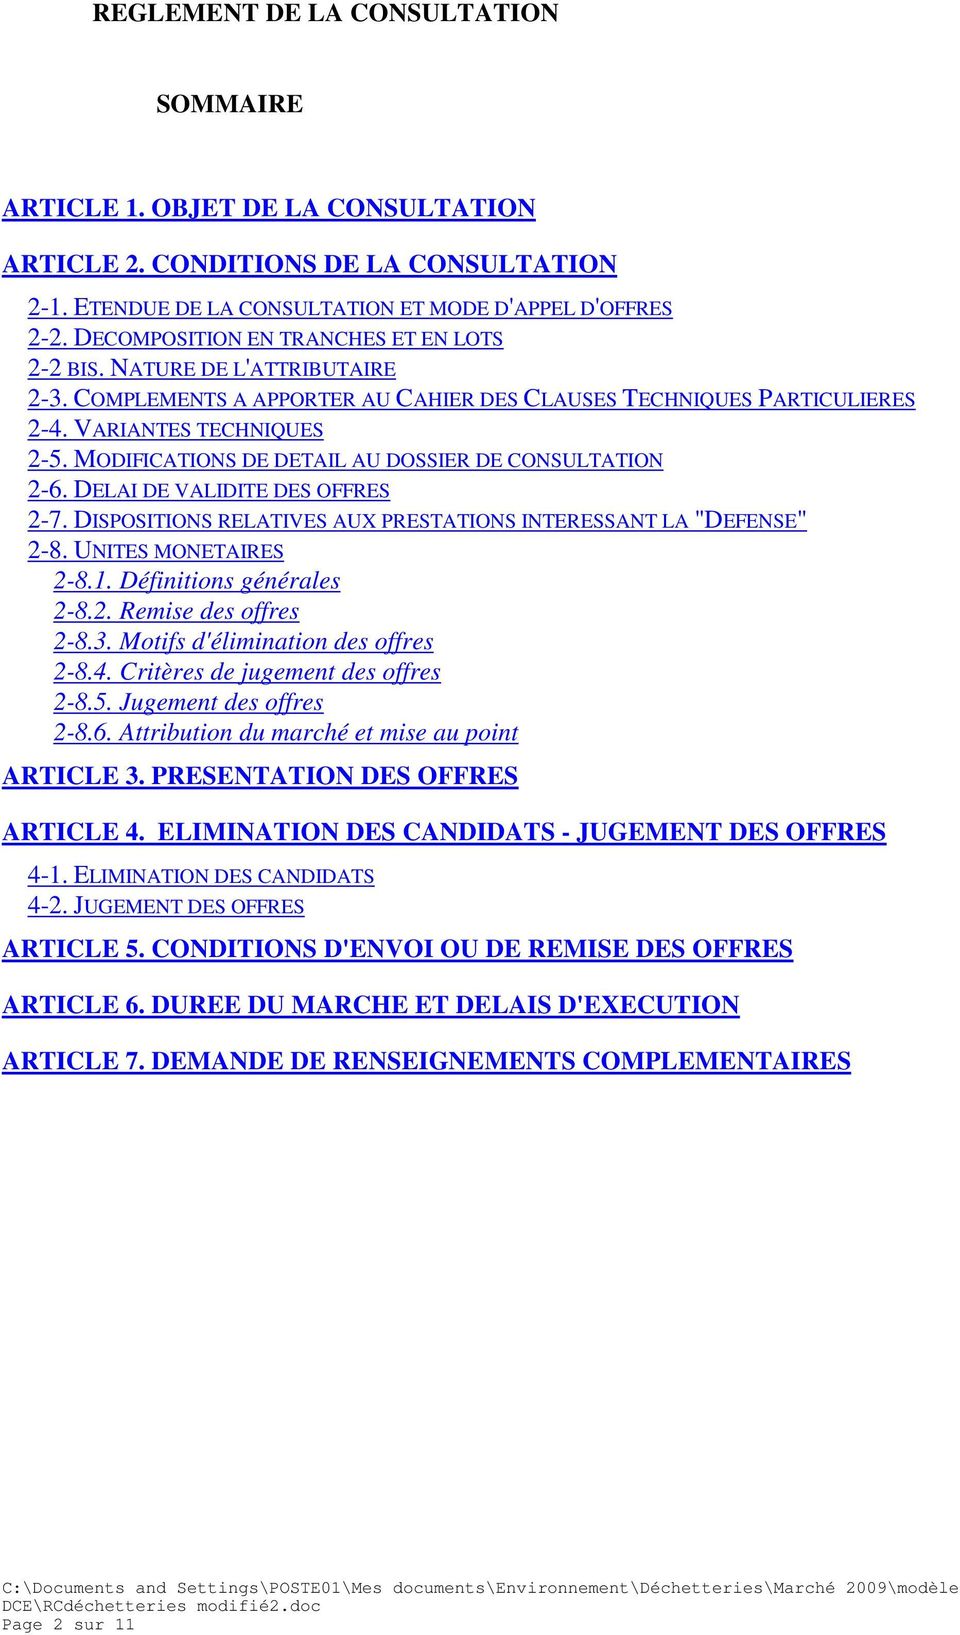 MODIFICATIONS DE DETAIL AU DOSSIER DE CONSULTATION 2-6. DELAI DE VALIDITE DES OFFRES 2-7. DISPOSITIONS RELATIVES AUX PRESTATIONS INTERESSANT LA "DEFENSE" 2-8. UNITES MONETAIRES 2-8.1.